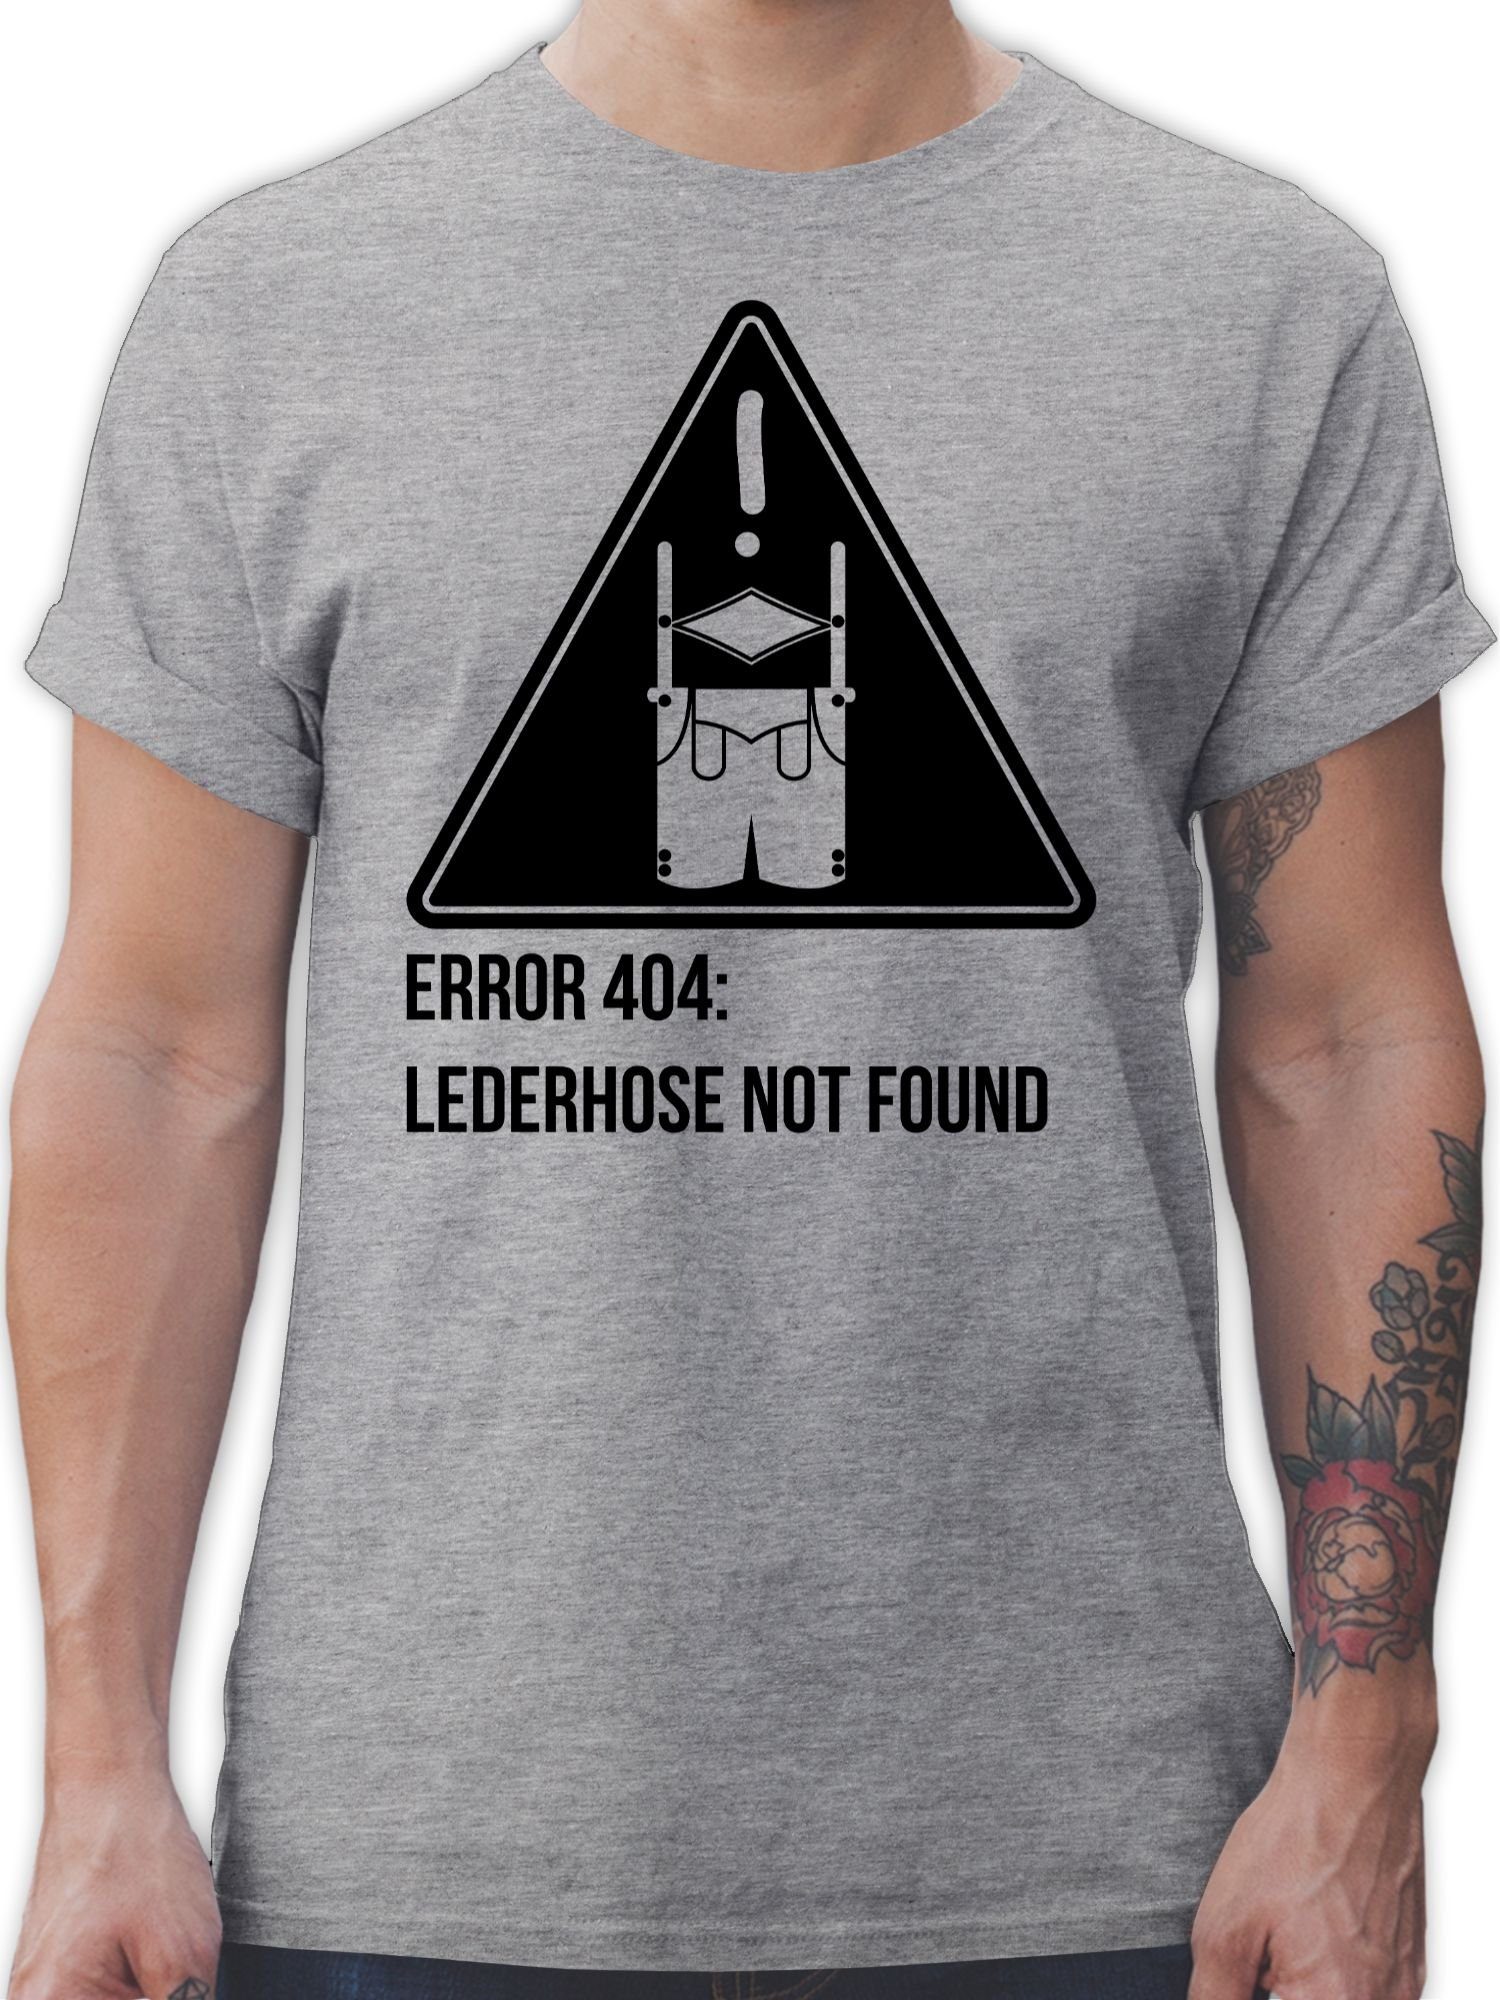 Shirtracer T-Shirt Error 404: Lederhose not found Mode für Oktoberfest Herren 1 Grau meliert